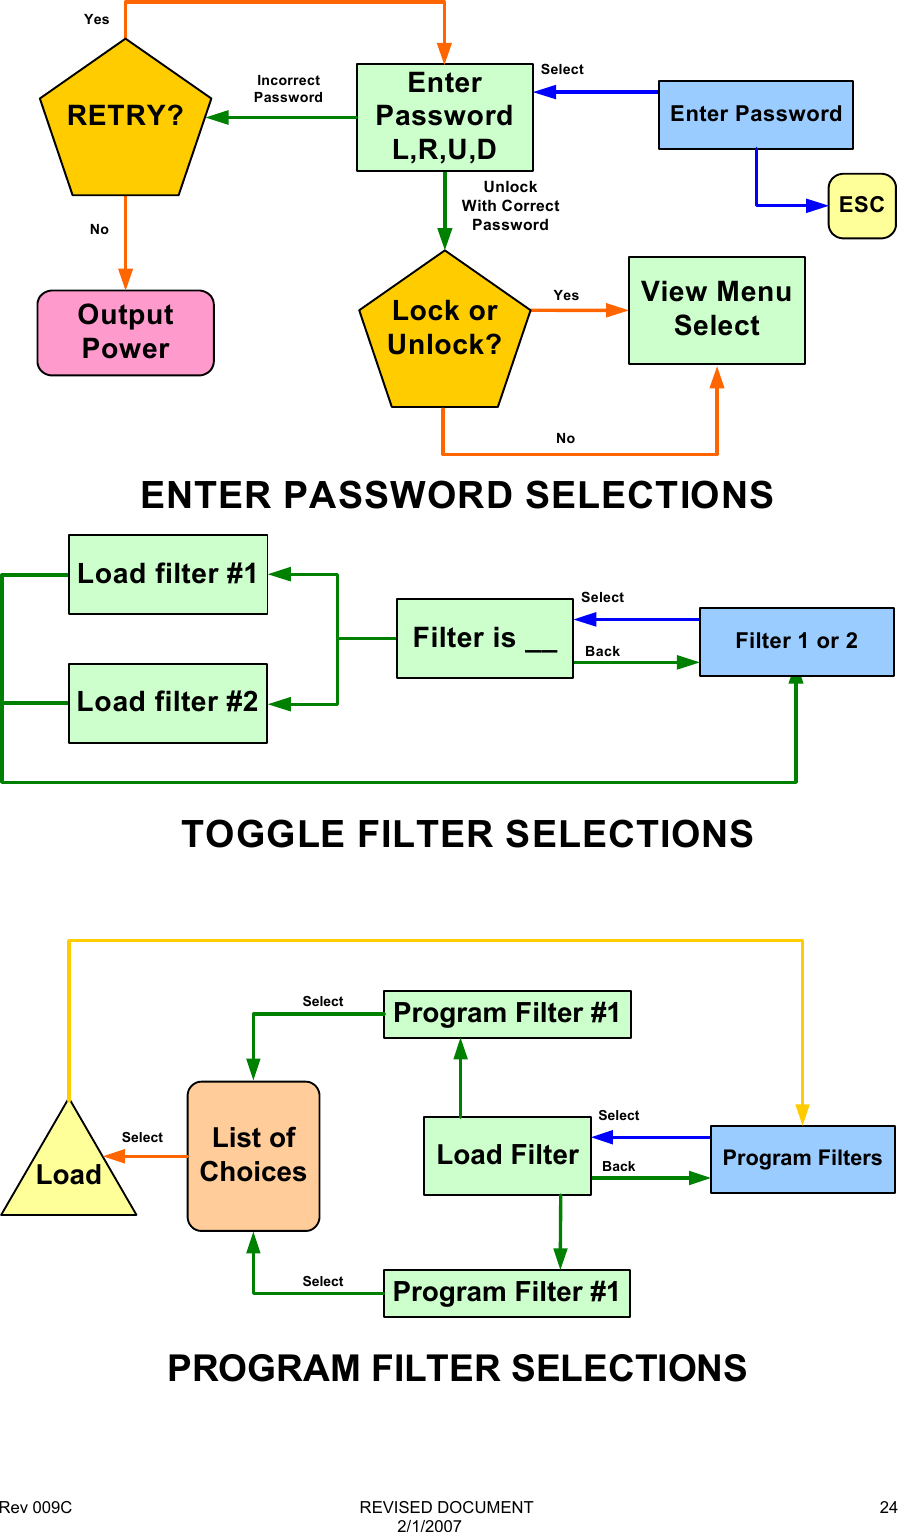 Rev 009C                                                              REVISED DOCUMENT 2/1/2007 24SelectOutputPowerEnter PasswordUnlockWith CorrectPasswordEnterPasswordL,R,U,DENTER PASSWORD SELECTIONSYesNoRETRY?Incorrect PasswordSelectBackTOGGLE FILTER SELECTIONSFilter is __ Filter 1 or 2Load filter #2Load filter #1Lock or Unlock?View Menu SelectYesNoESC   PROGRAM FILTER SELECTIONSLoad FilterSelectBack Program FiltersProgram Filter #1Program Filter #1List of ChoicesLoadSelectSelectSelect  